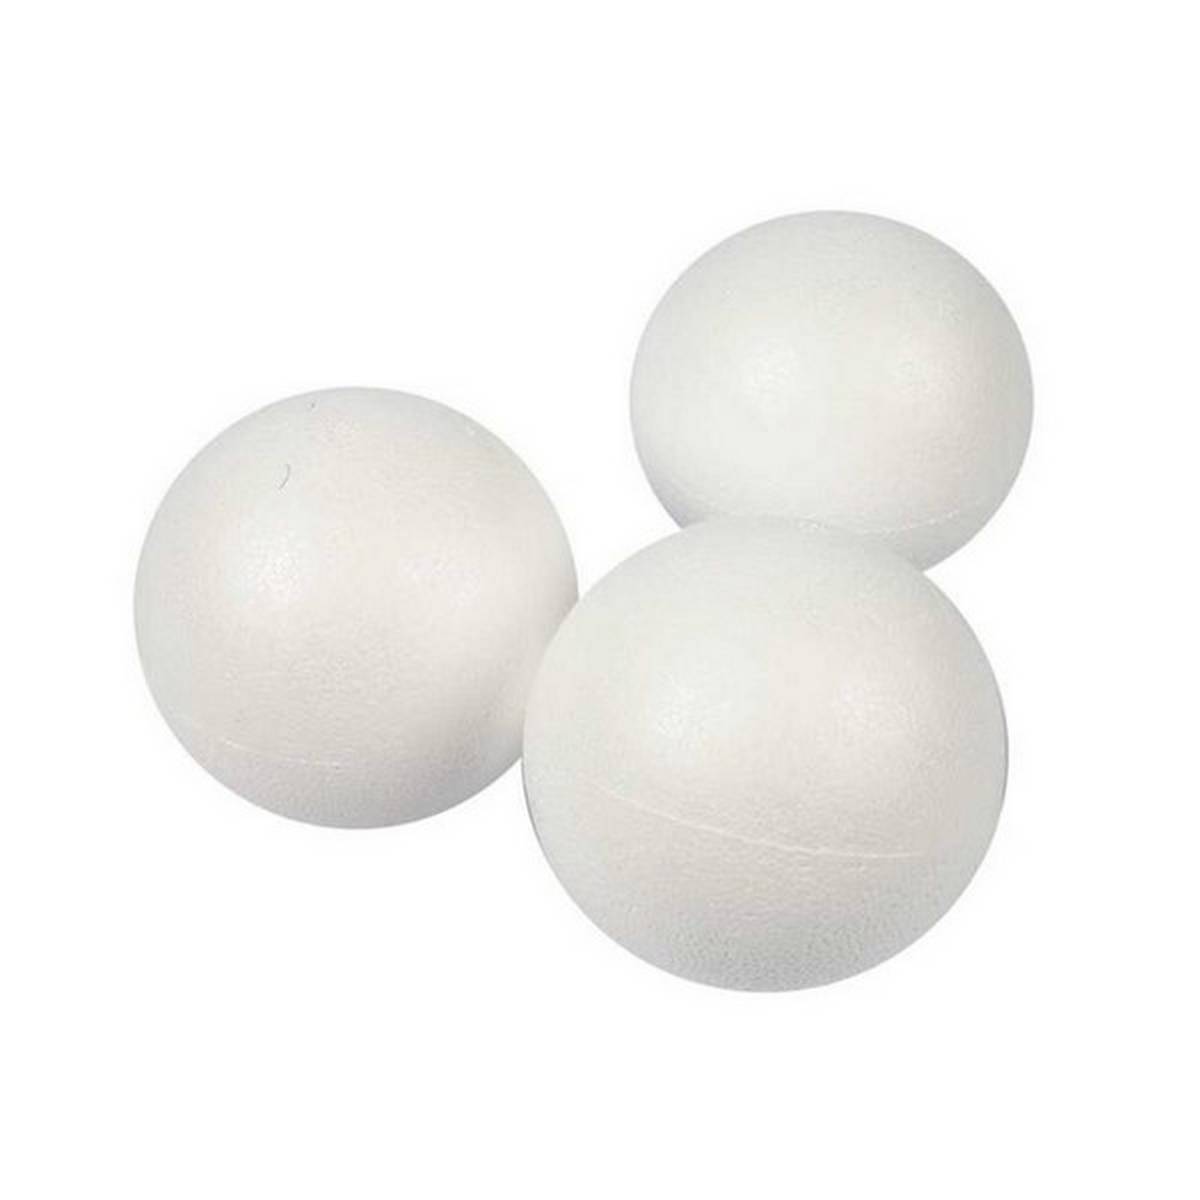 Styrofoam Balls 100mm Pack of 4